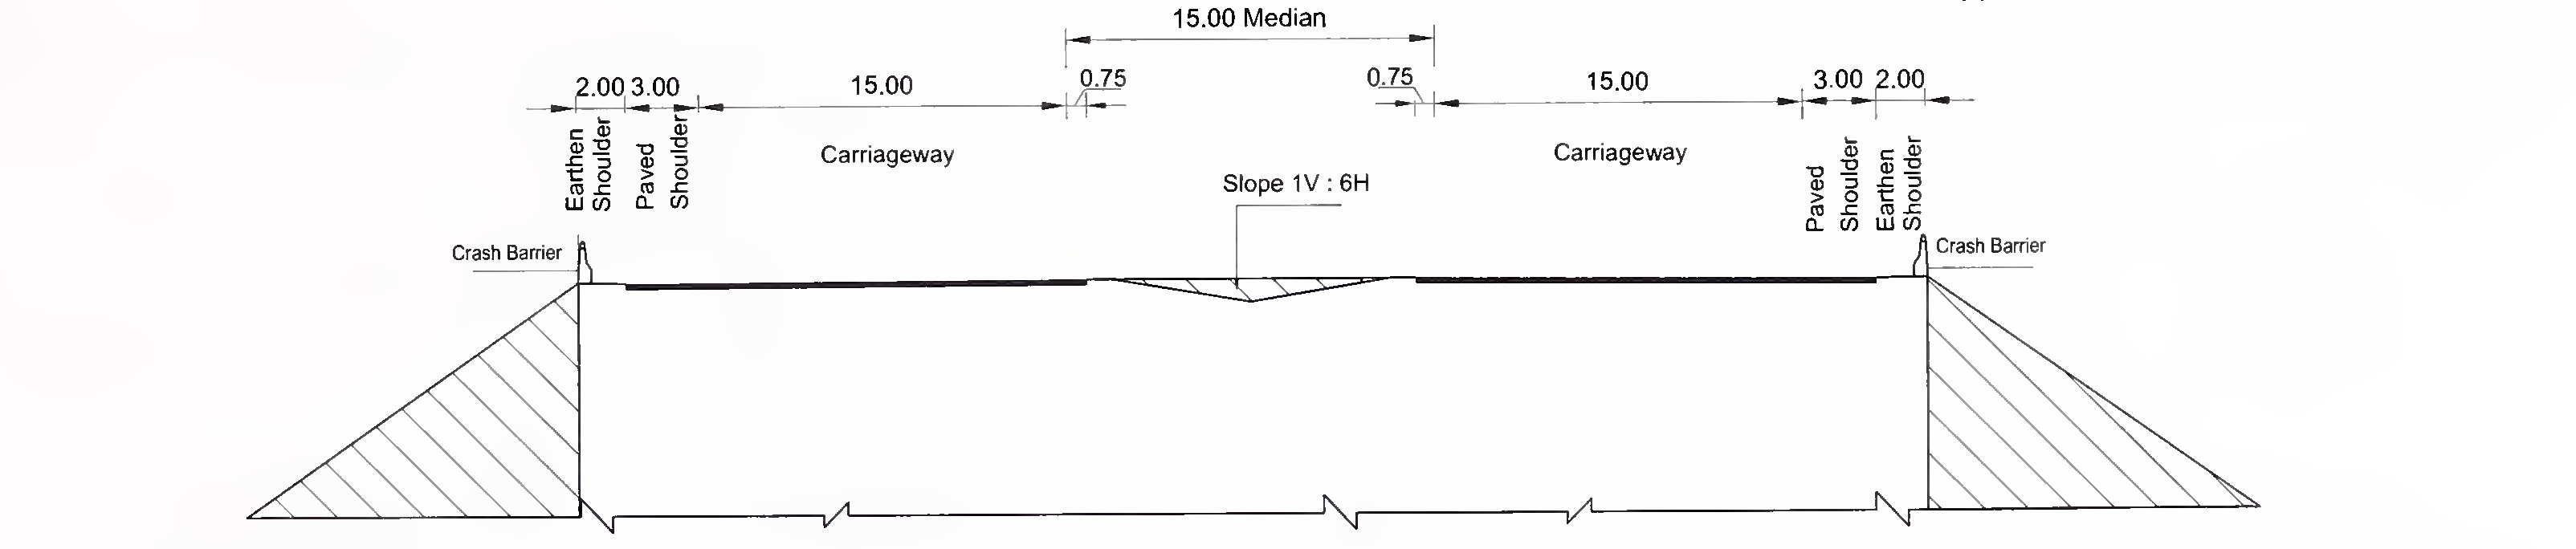 ചിത്രം 6.3 (സി) 8-ലെയ്‌നിനുള്ള സ്ലാബിന്റെയും ബോക്സ് തരം കൽ‌വർട്ടിന്റെയും സാധാരണ ക്രോസ്-സെക്ഷൻ (2 × 4) വിഷാദമുള്ള മീഡിയൻ ഉള്ള എക്സ്പ്രസ് വേ